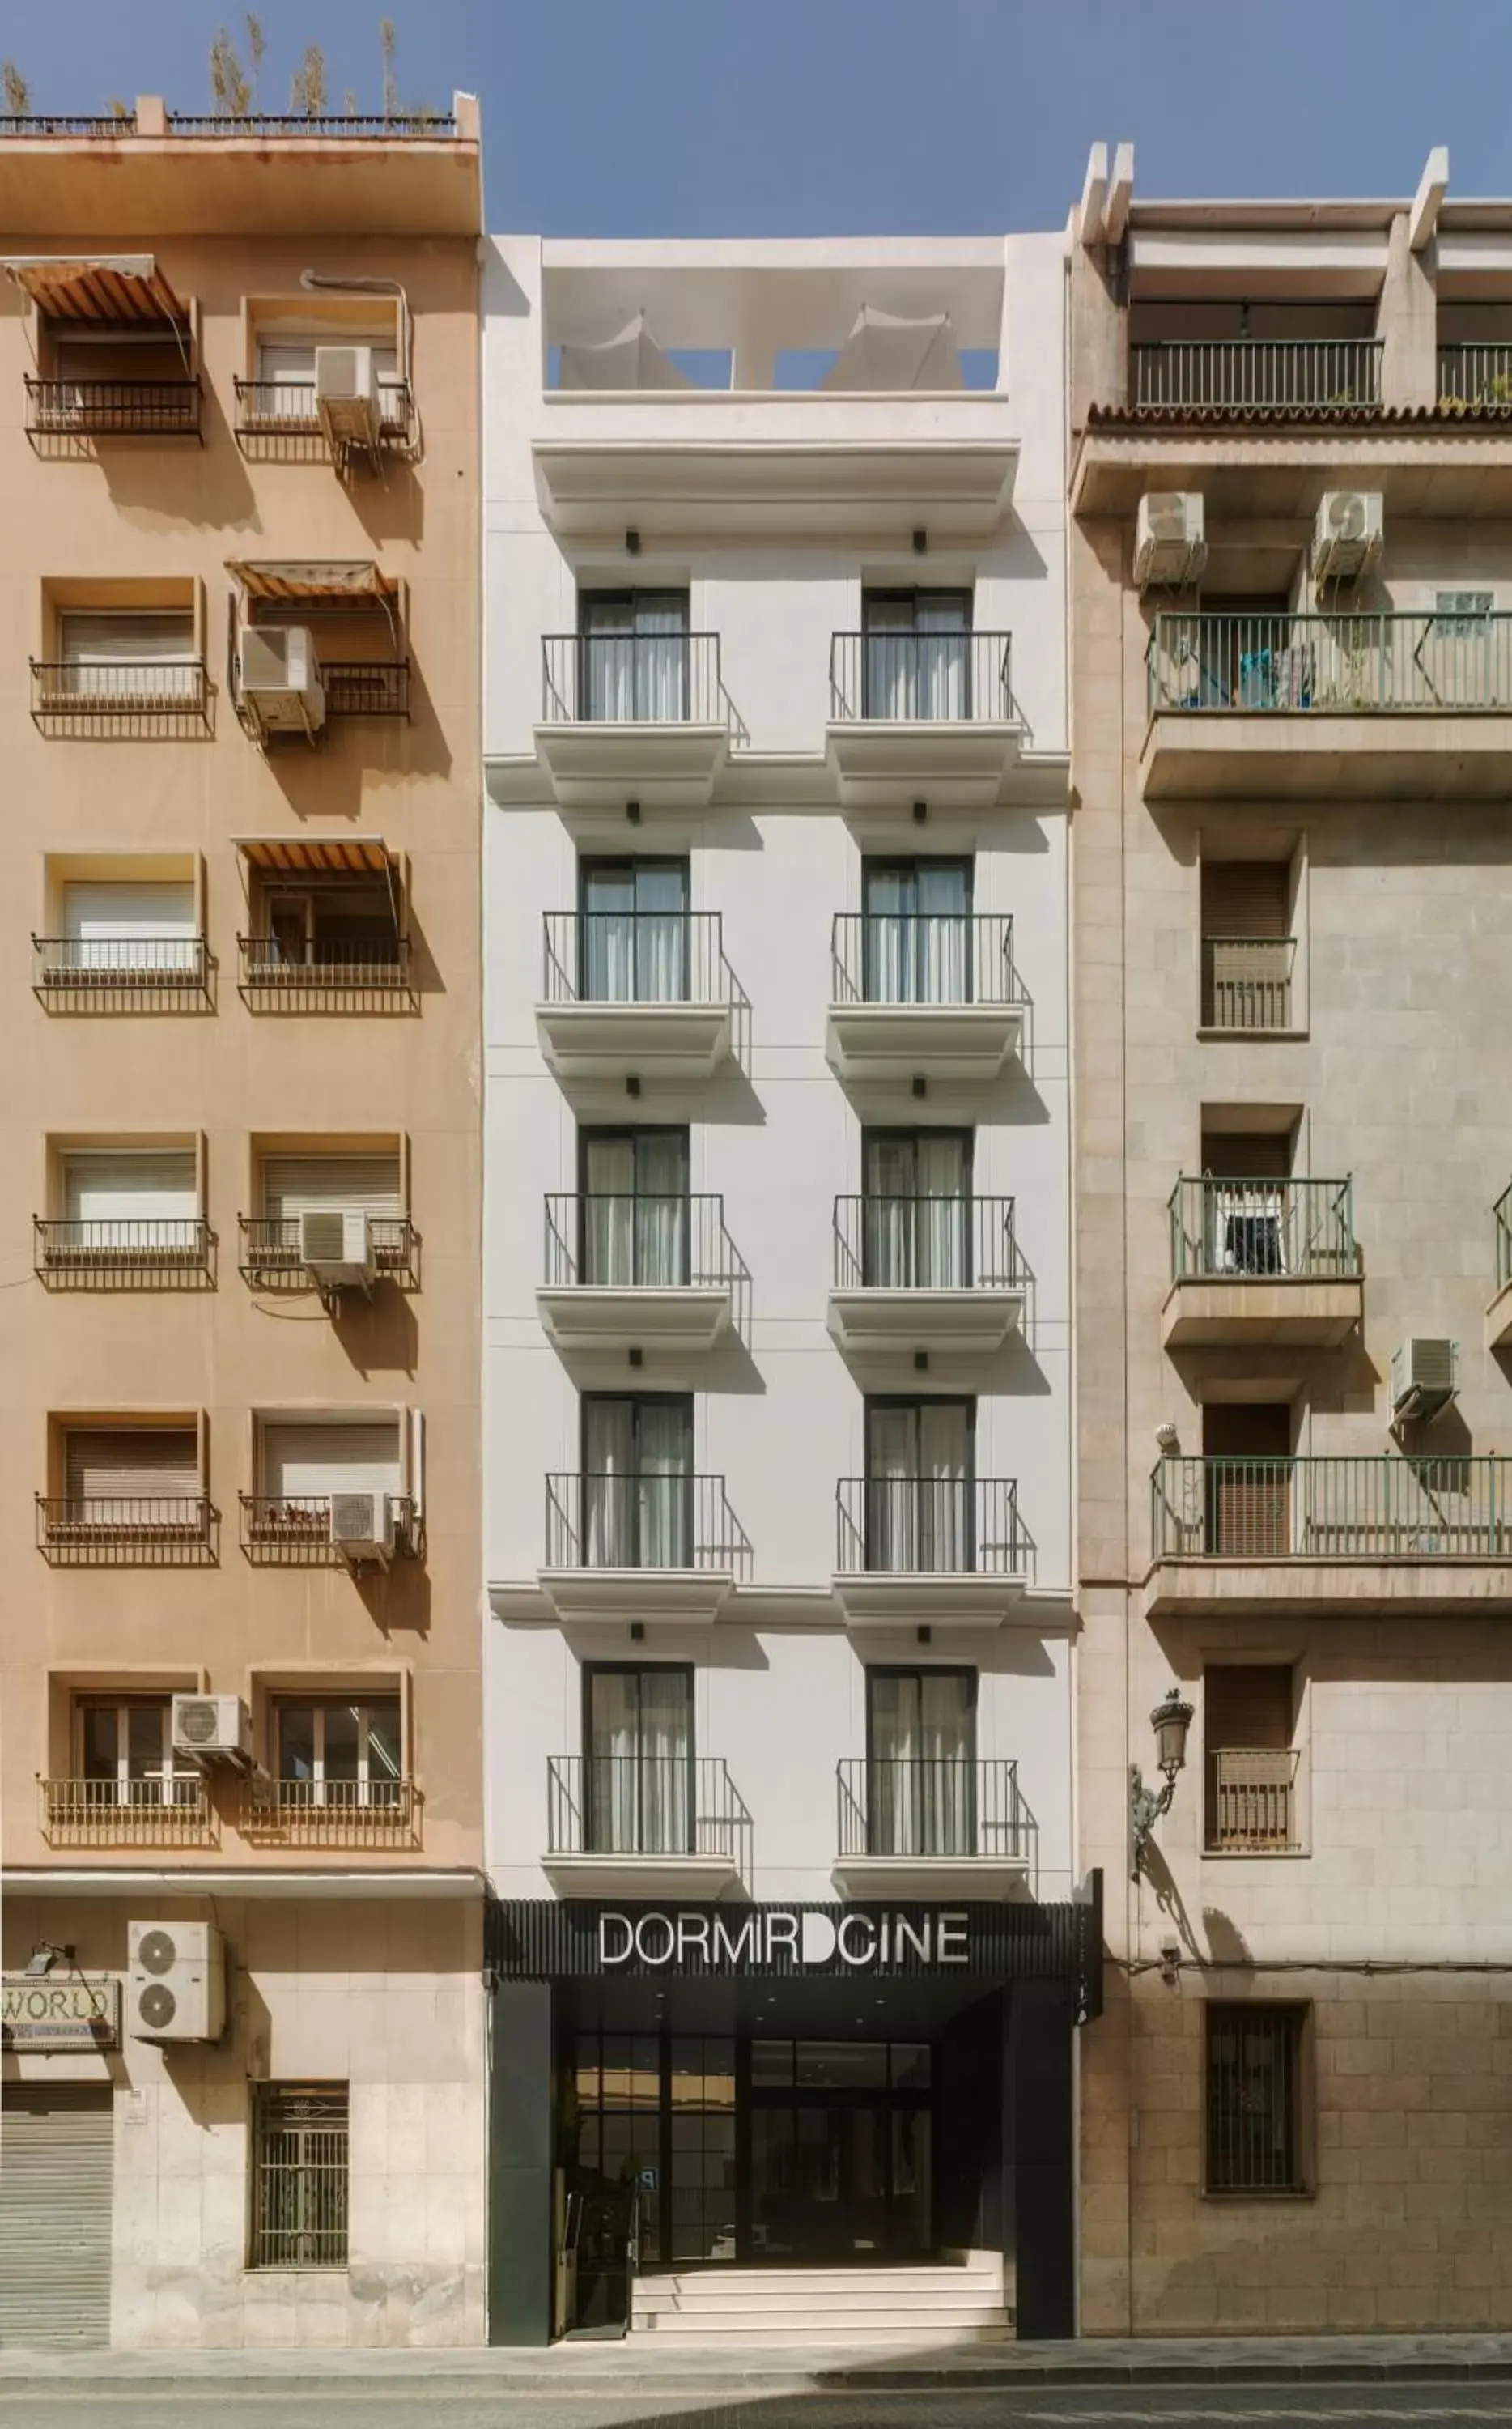 Facade/entrance, Property Building in Dormirdcine Alicante